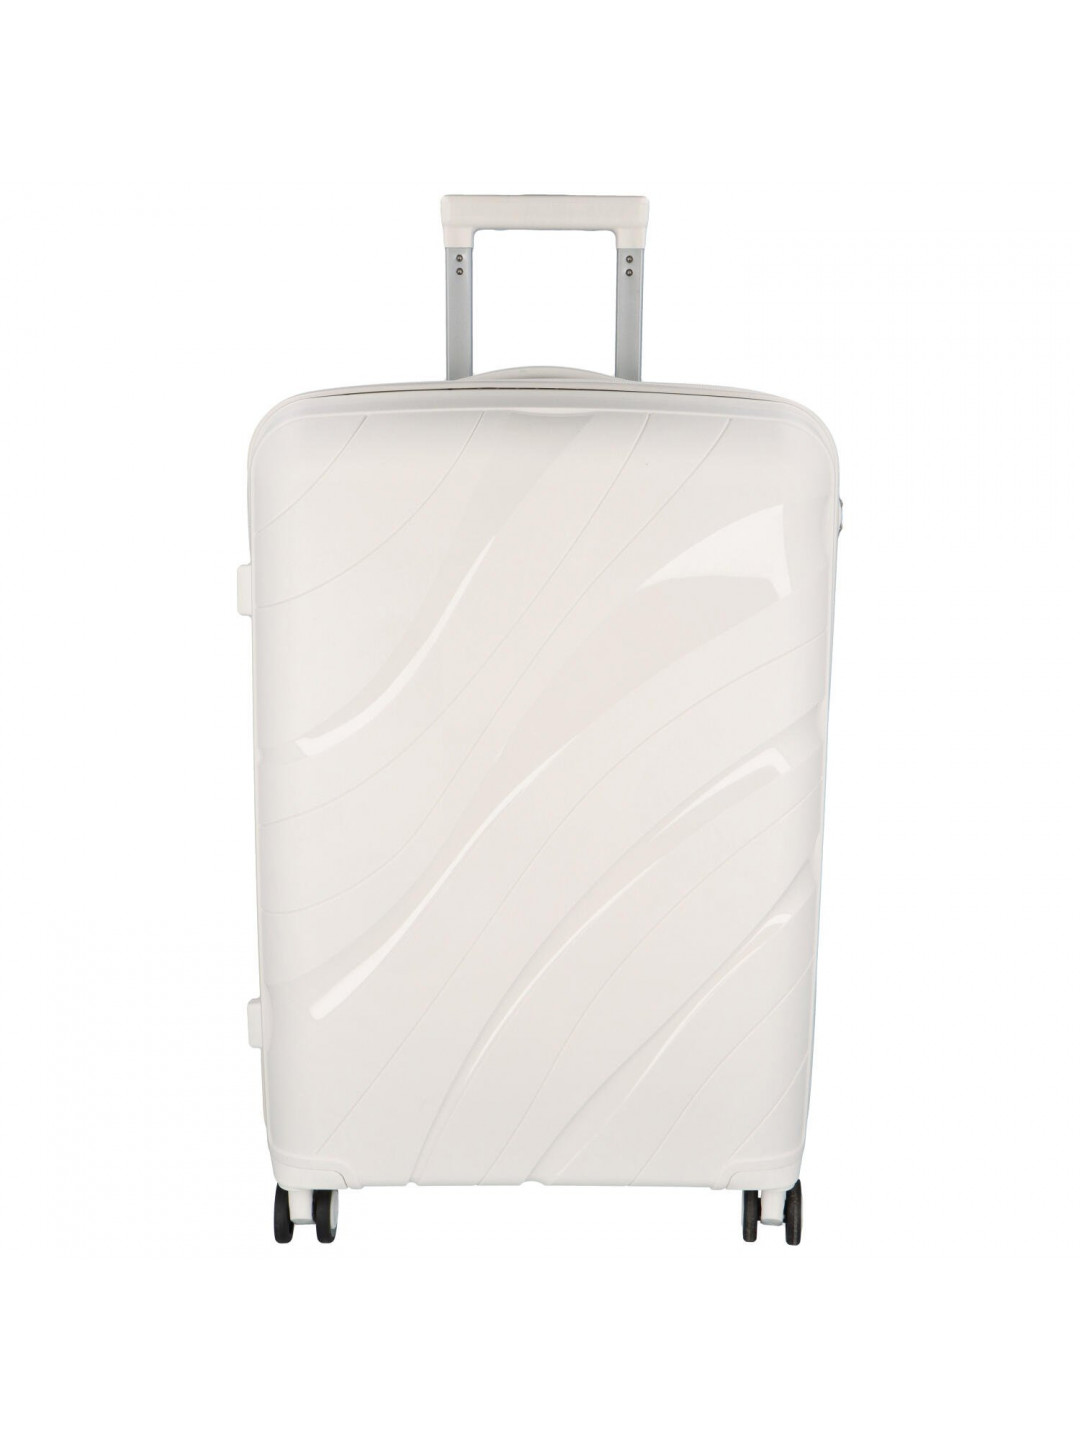 Cestovní plastový kufr Voyex velikosti L bílý